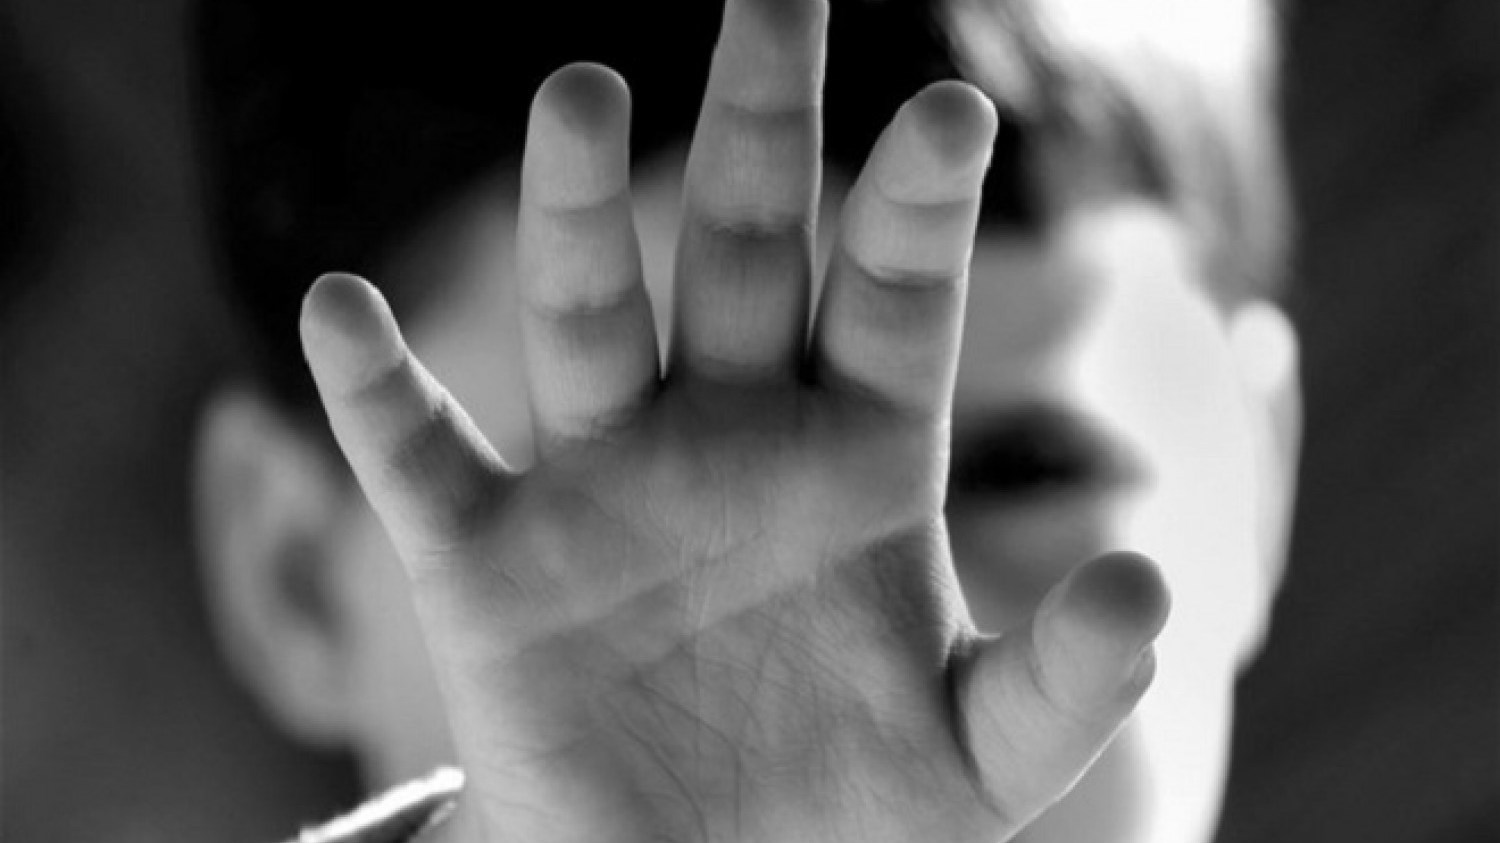 Παρέμβαση Κοντονή για τις αποκαλύψεις σε Λέρο και Ζάκυνθο – Ζητά παραδειγματική τιμωρία για όσους εμπλέκονται σε κακοποίηση παιδιών